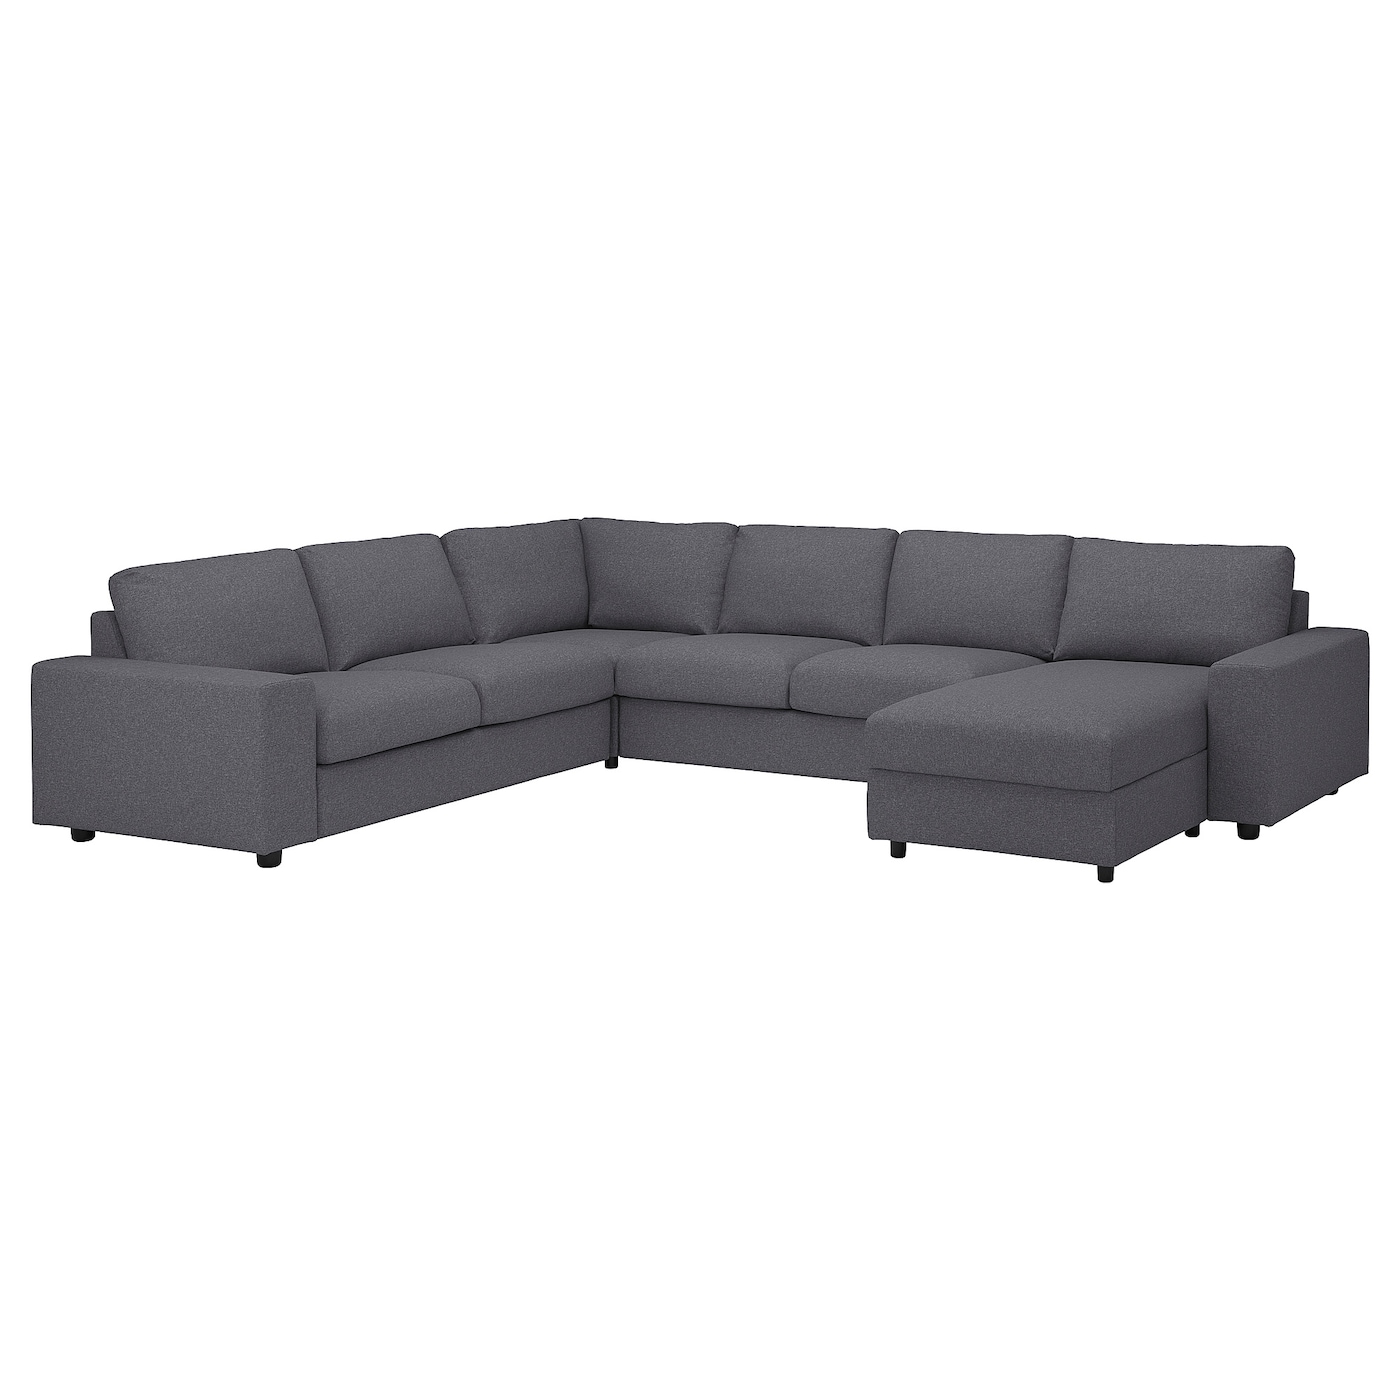 ВИМЛЕ Диван угловой, 5-местный. диван+диван, с широкими подлокотниками/Гуннаред средний серый VIMLE IKEA угловой диван fortune шоколадный